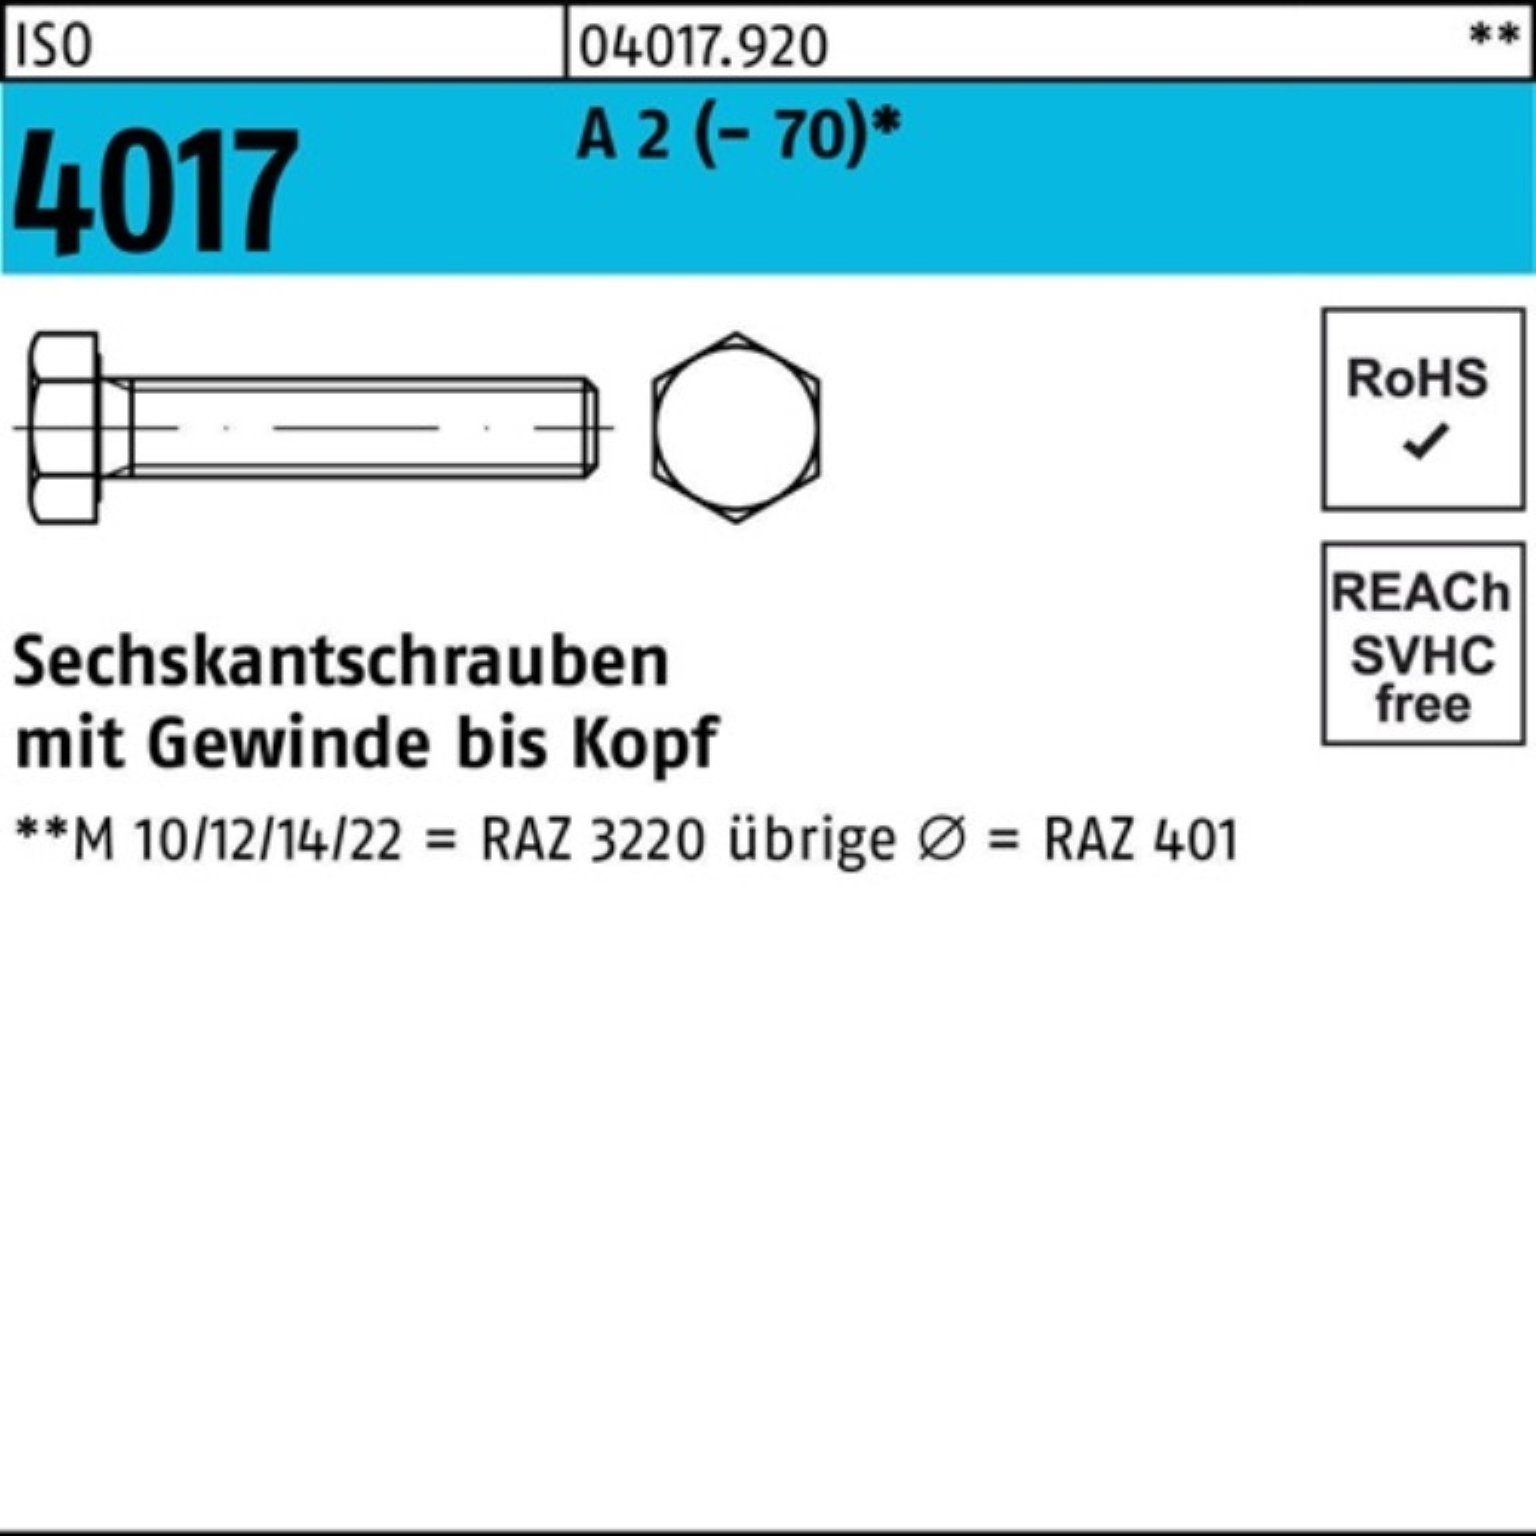 Bufab Sechskantschraube 100er Pack Sechskantschraube ISO 4017 VG M18x 150 A 2 (70) 1 Stück